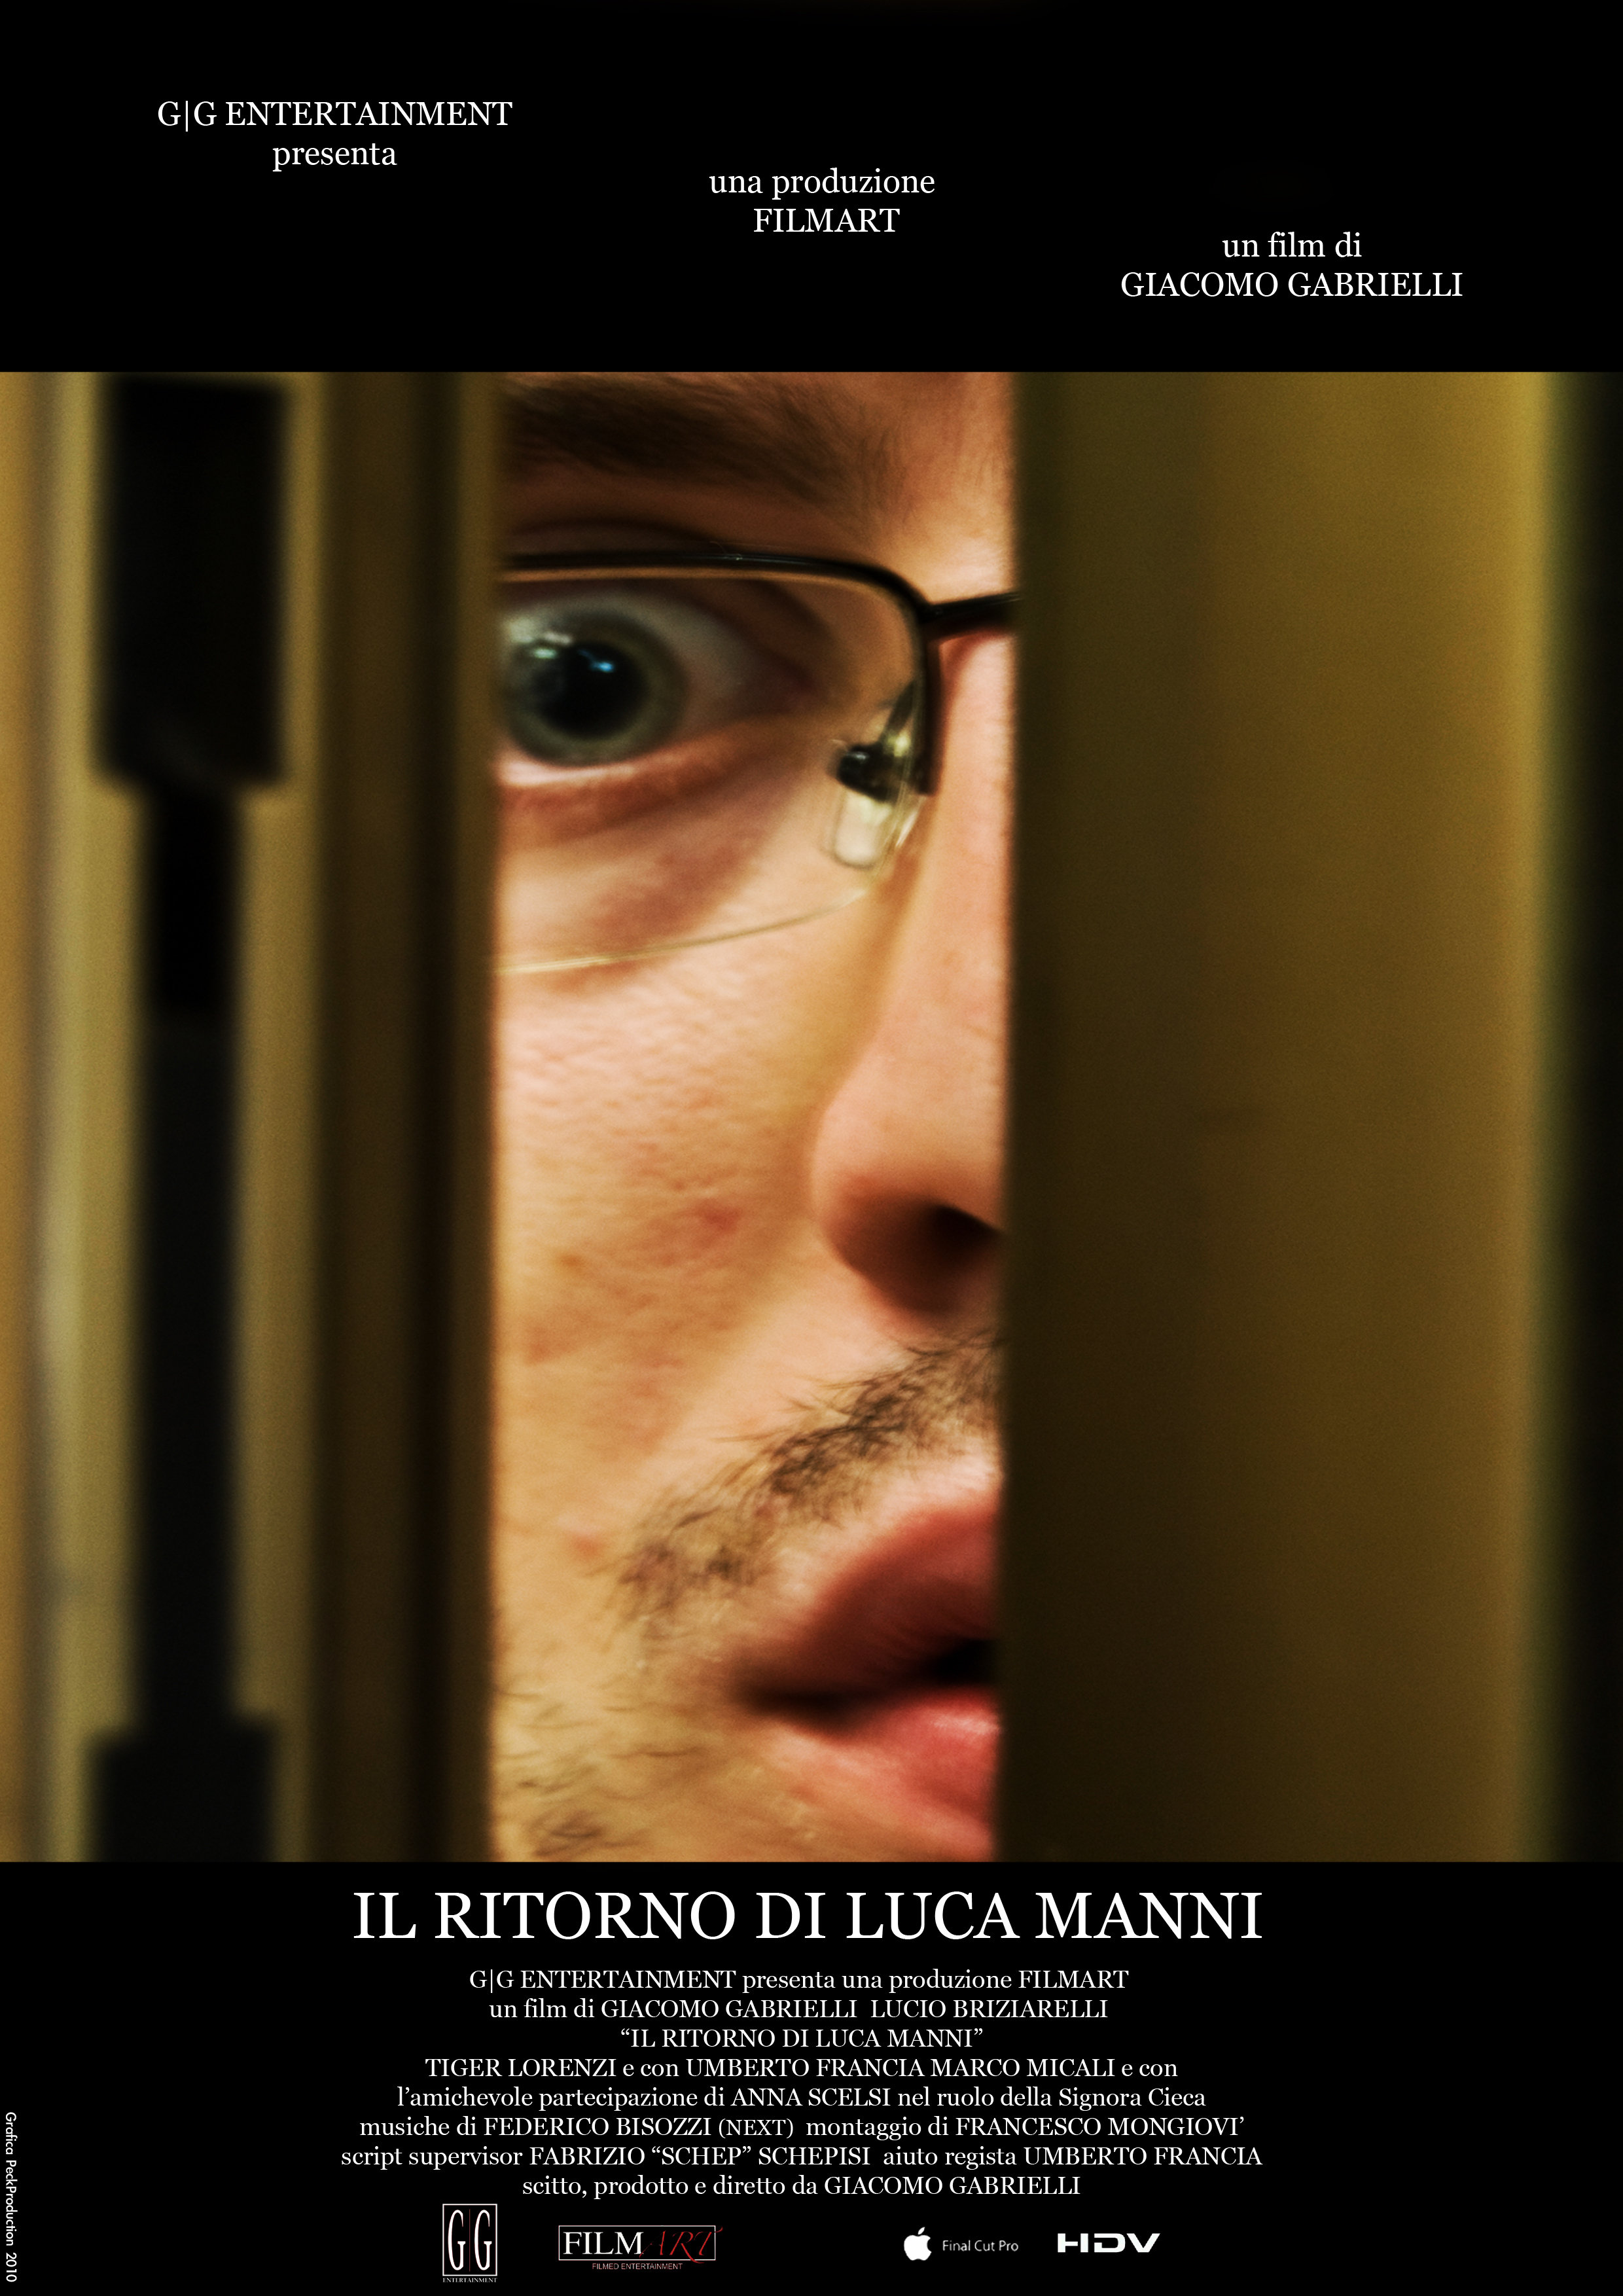 'Il ritorno di Luca Manni' (2009) movie poster.